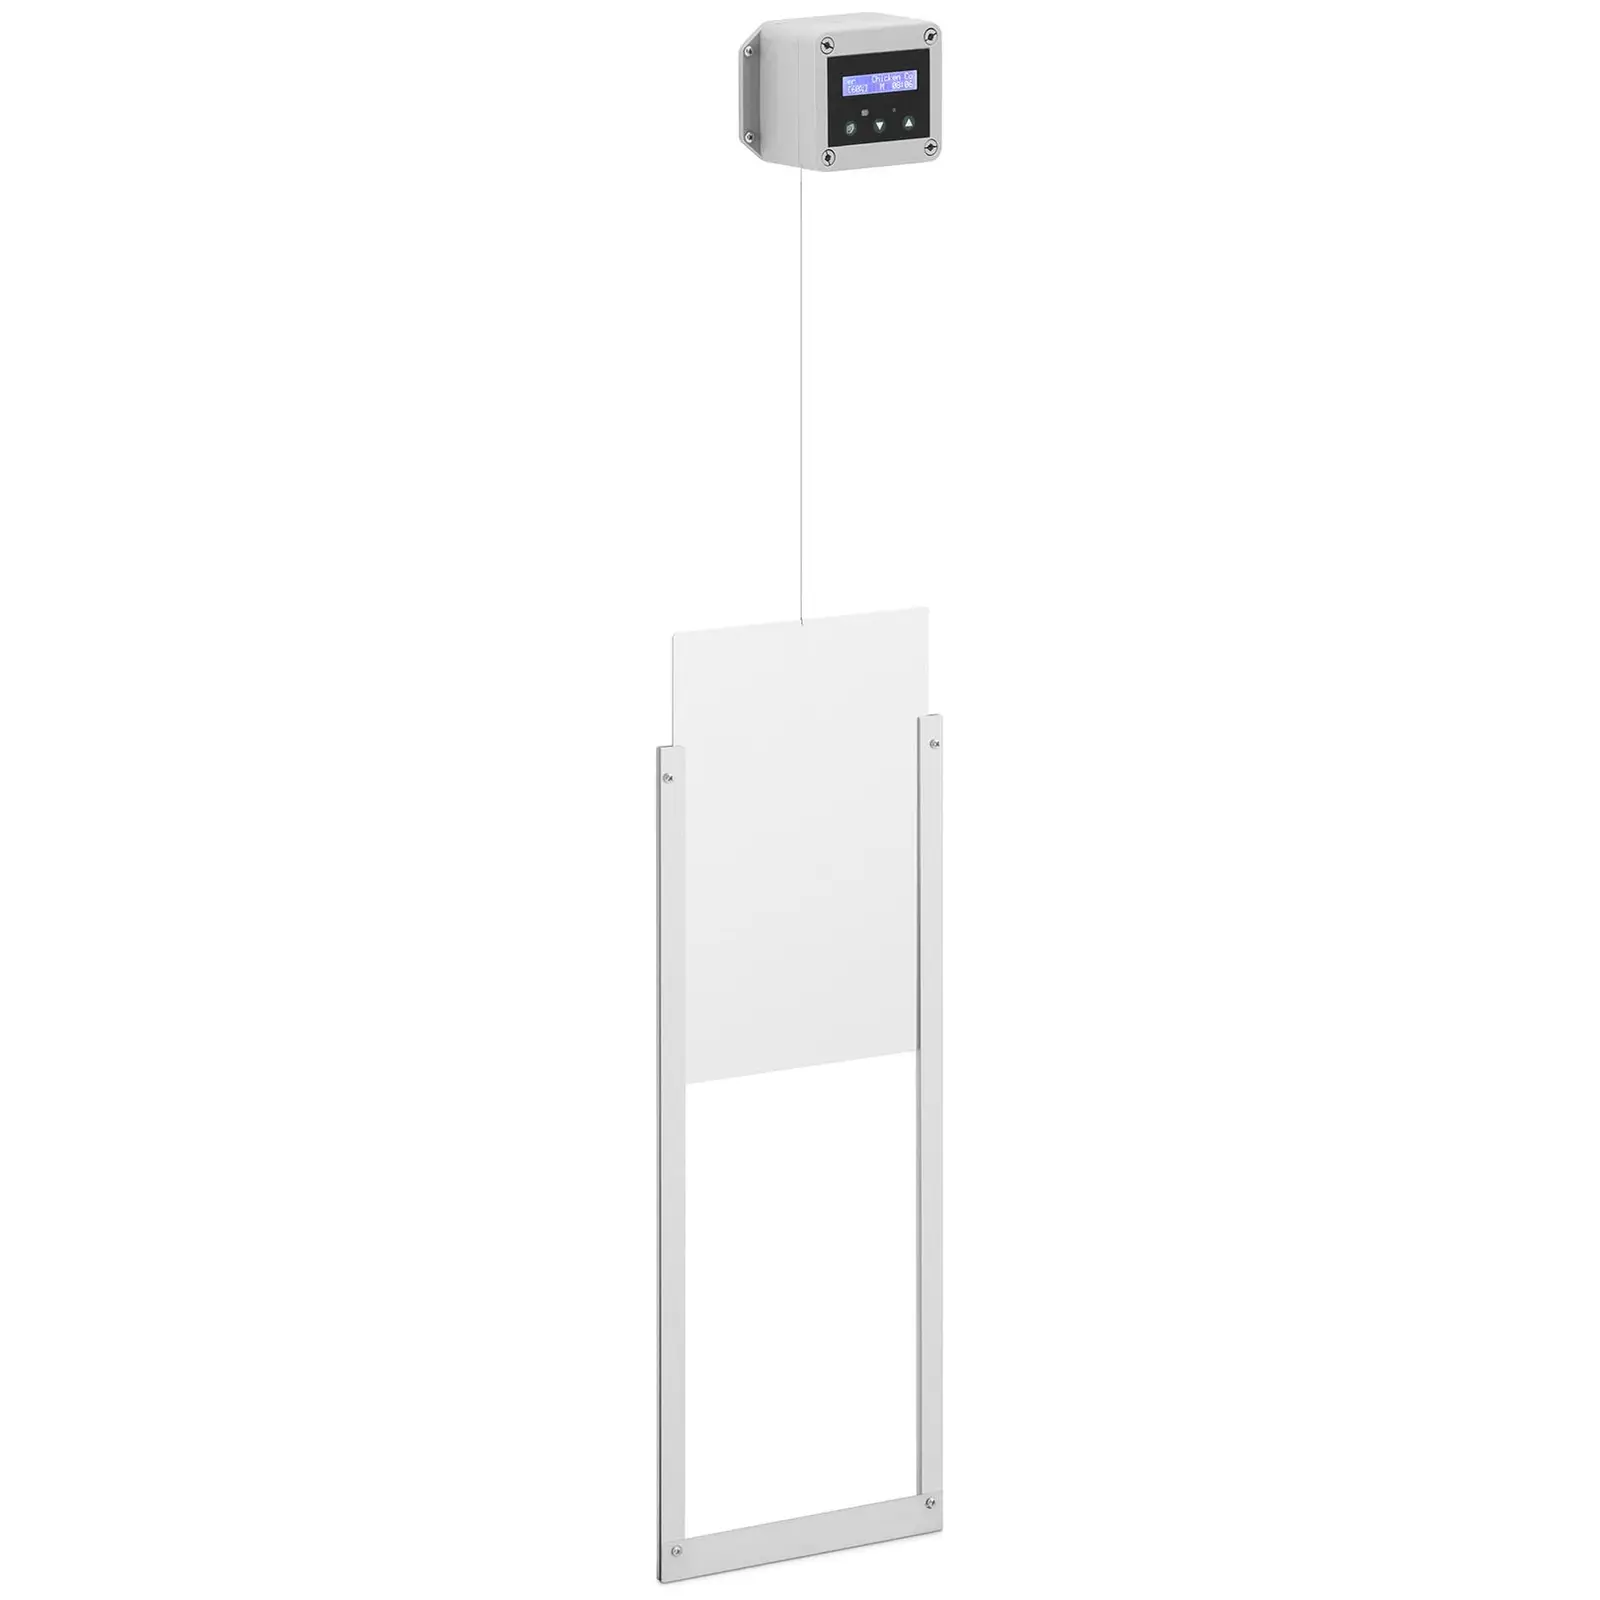 Puerta automática para gallinero - temporizador / sensor de luz - funcionamiento con pilas - carcasa impermeable - medición precisa del valor lumínico